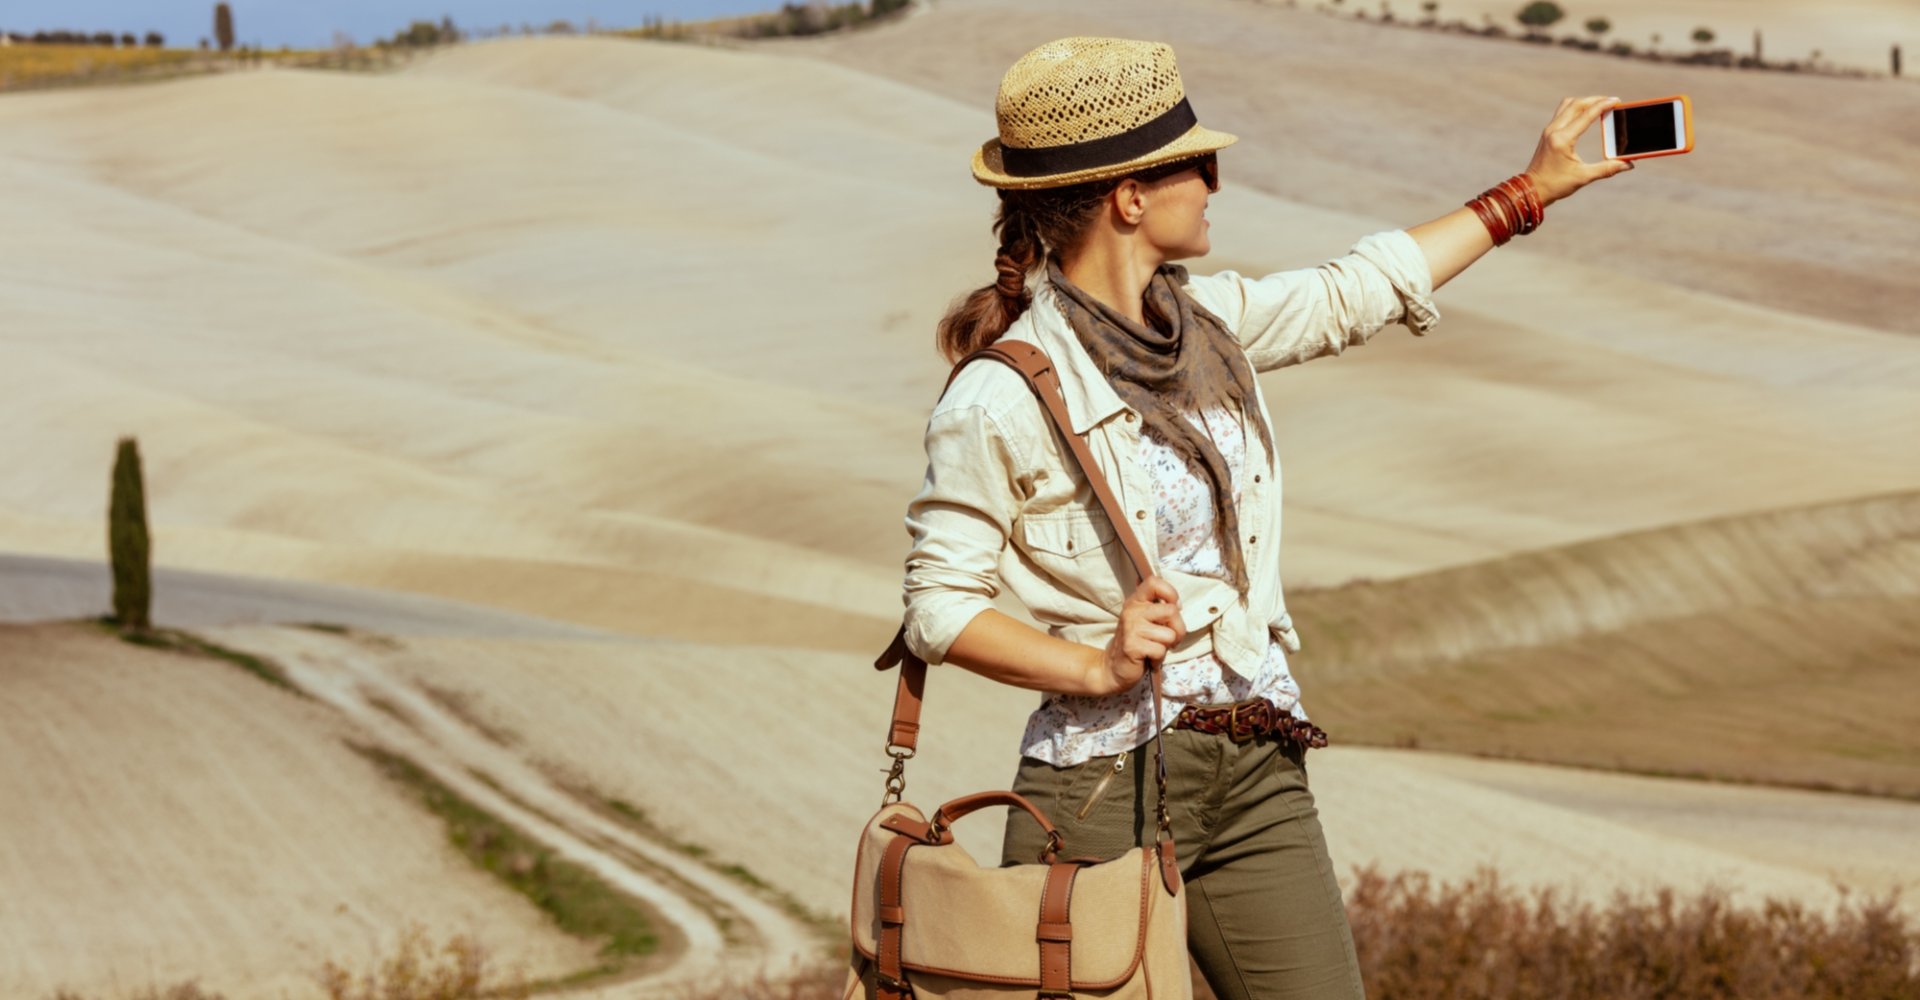 Das Landschaftspanorama der Toskana ist ideal, um großartige Fotos aufzunehmen